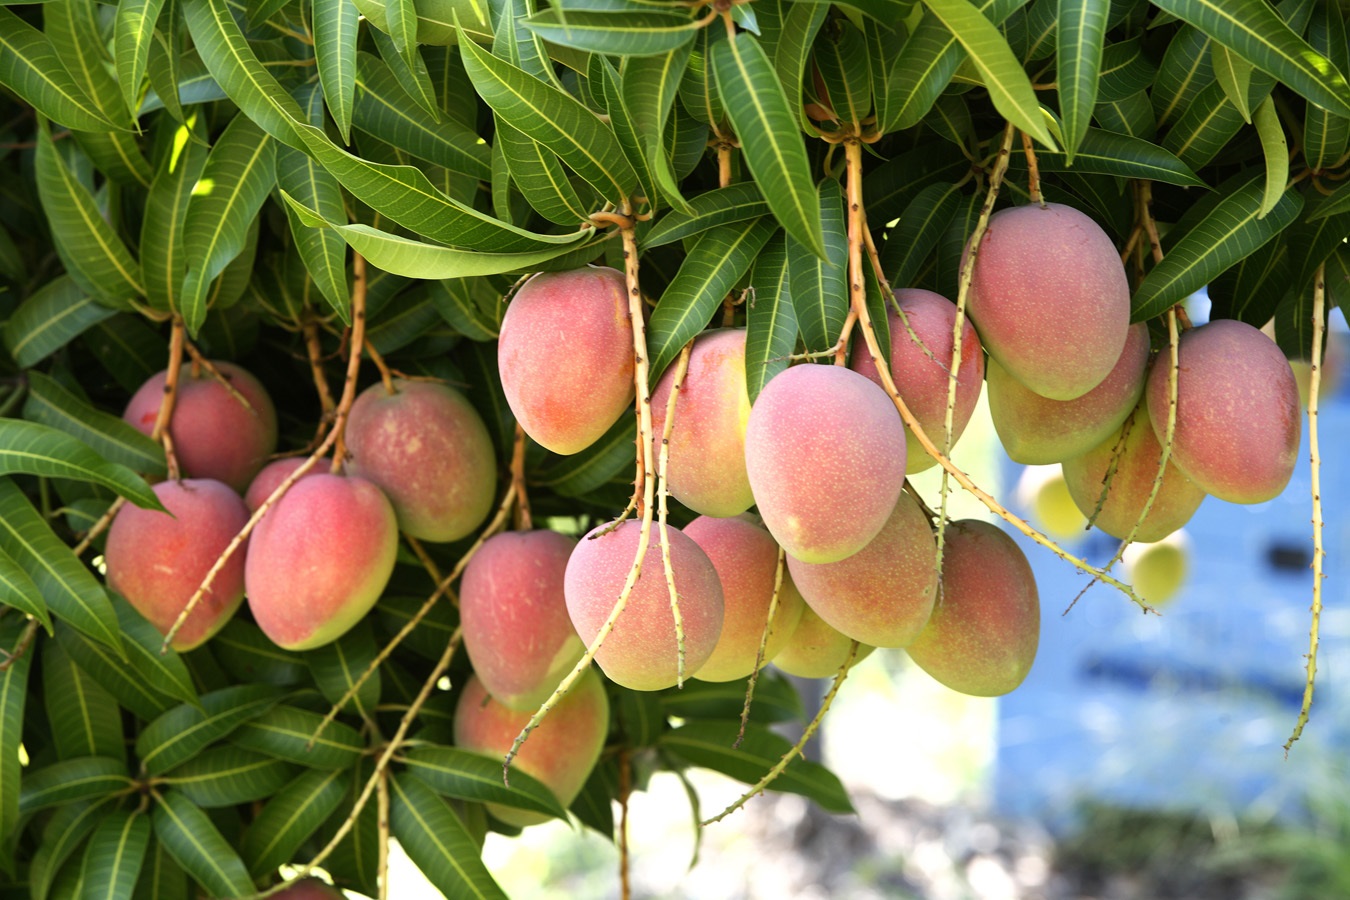 Fruit growing is. Манго фрукт дерево. Дерево манго манговое дерево. Дерево манго в природе. Манго индийское растение.